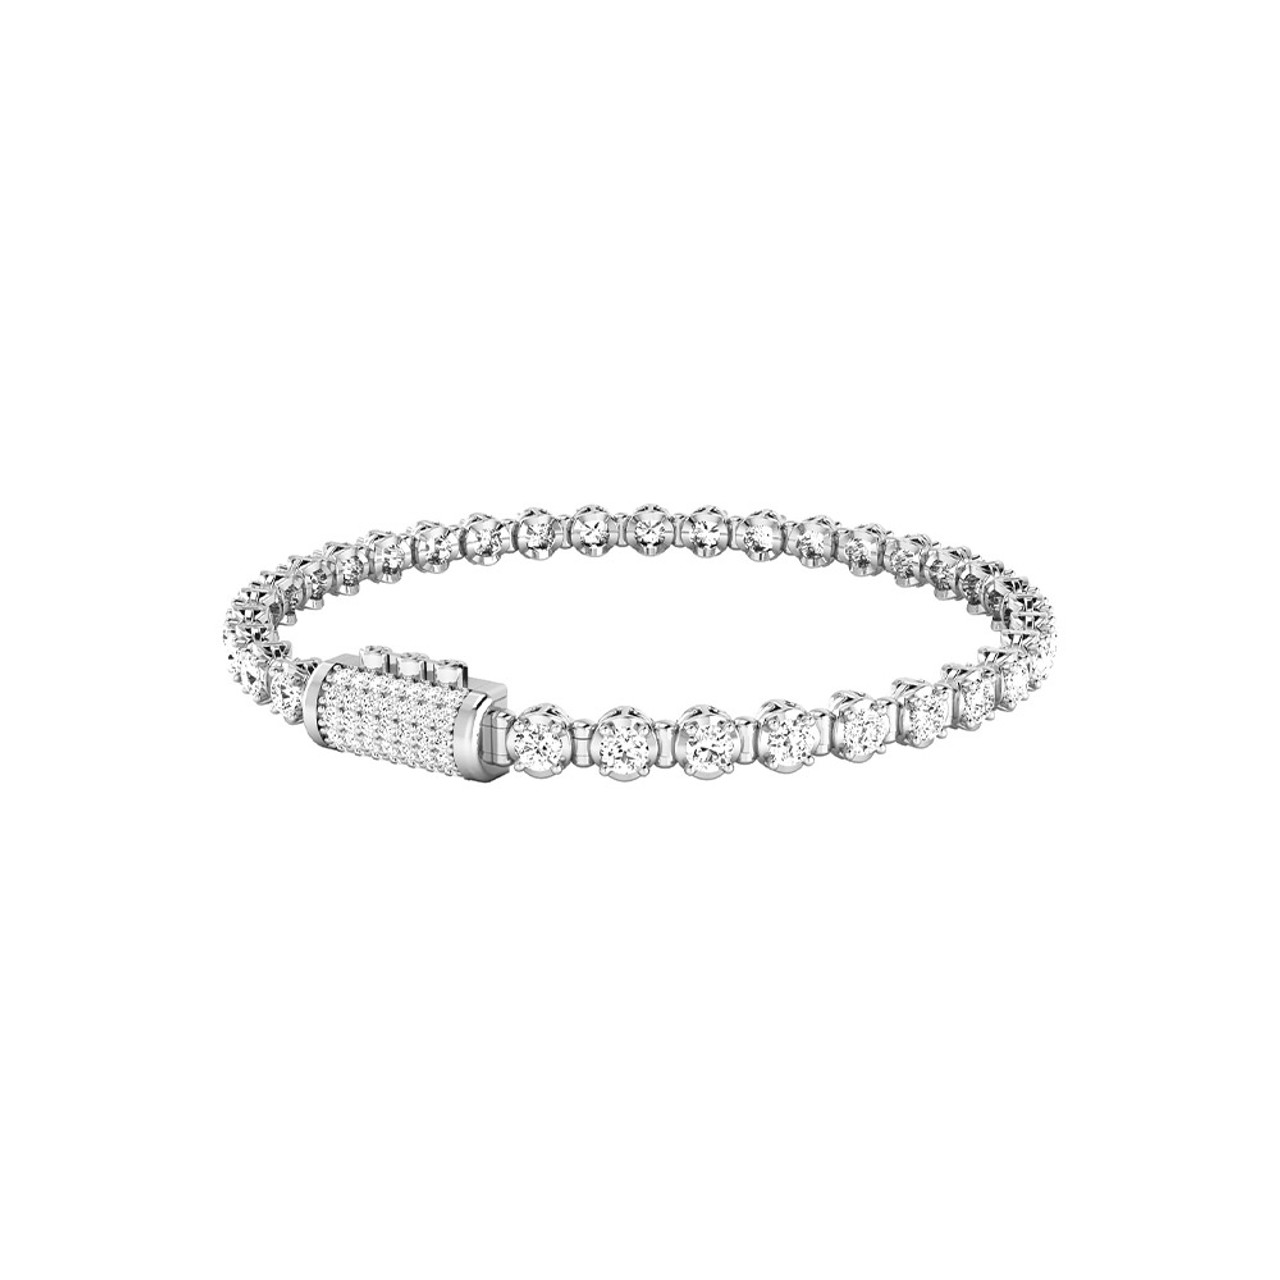 Diamond Tennis Bracelet Pricing : r/Diamonds